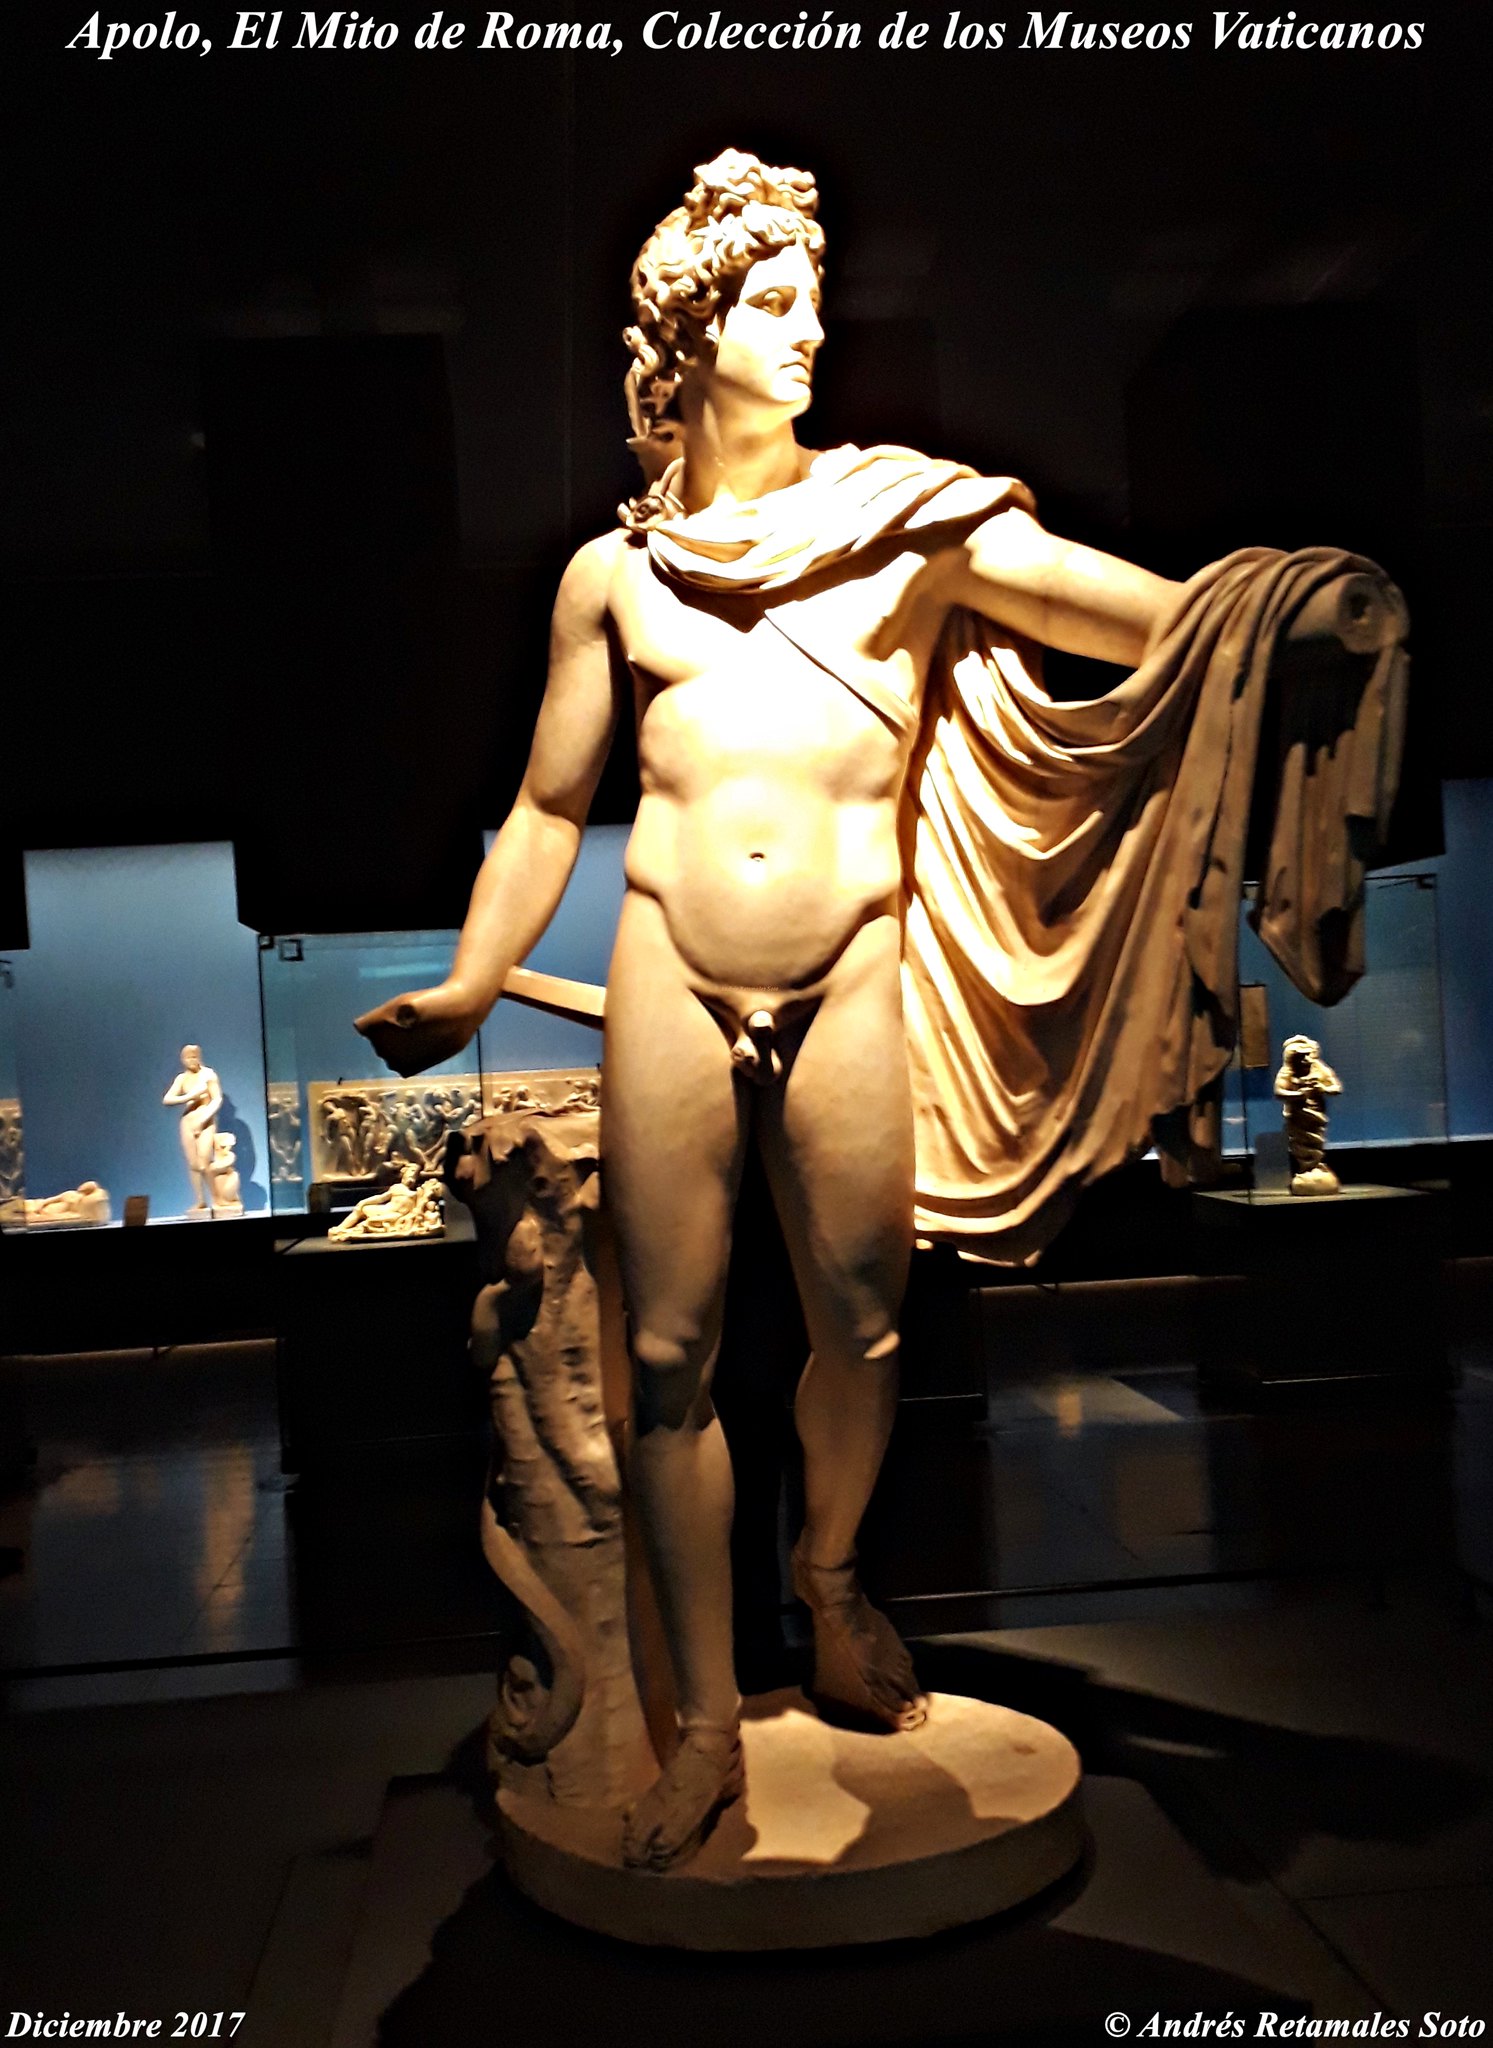 Apolo. Exposición El Mito de Roma, Colección de los Museos Vaticanos, CCPLM, Santiago de Chile, diciembre 2017